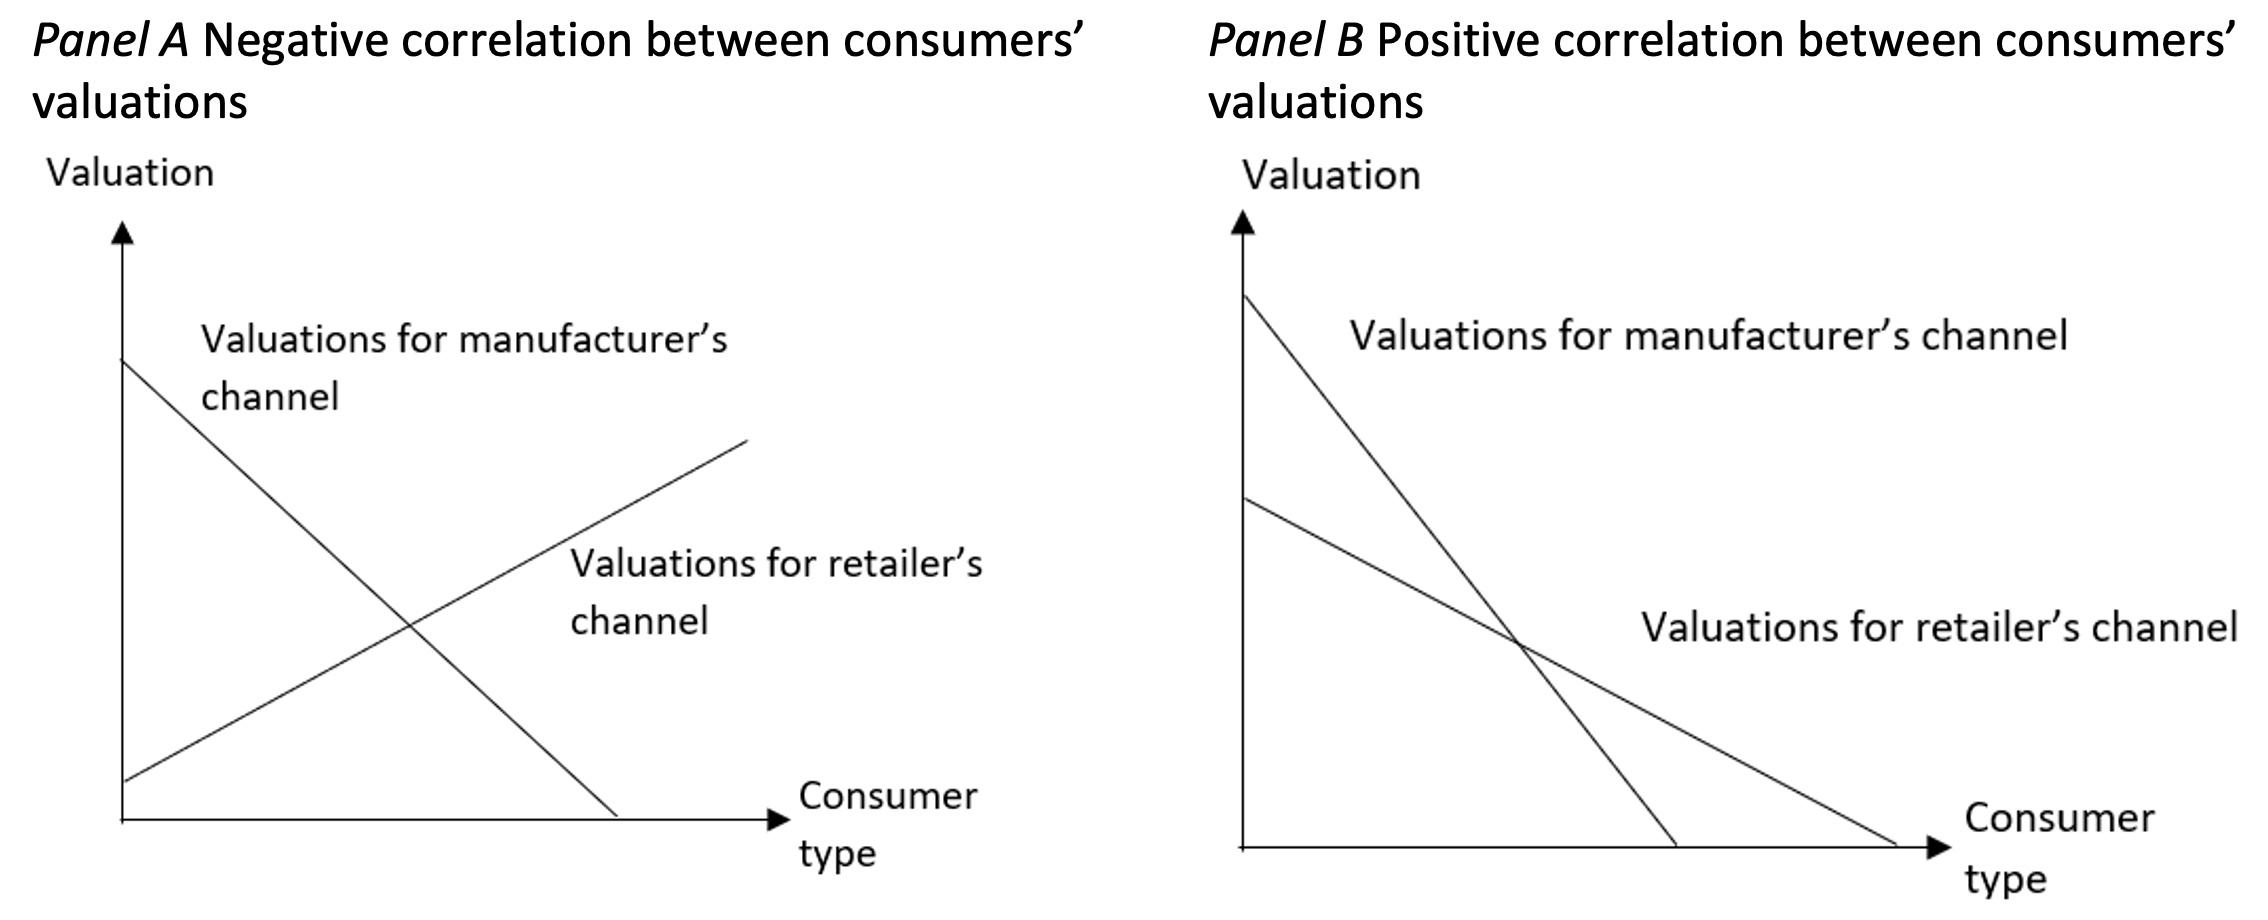 制造商渠道与零售商渠道估值之间的相关性